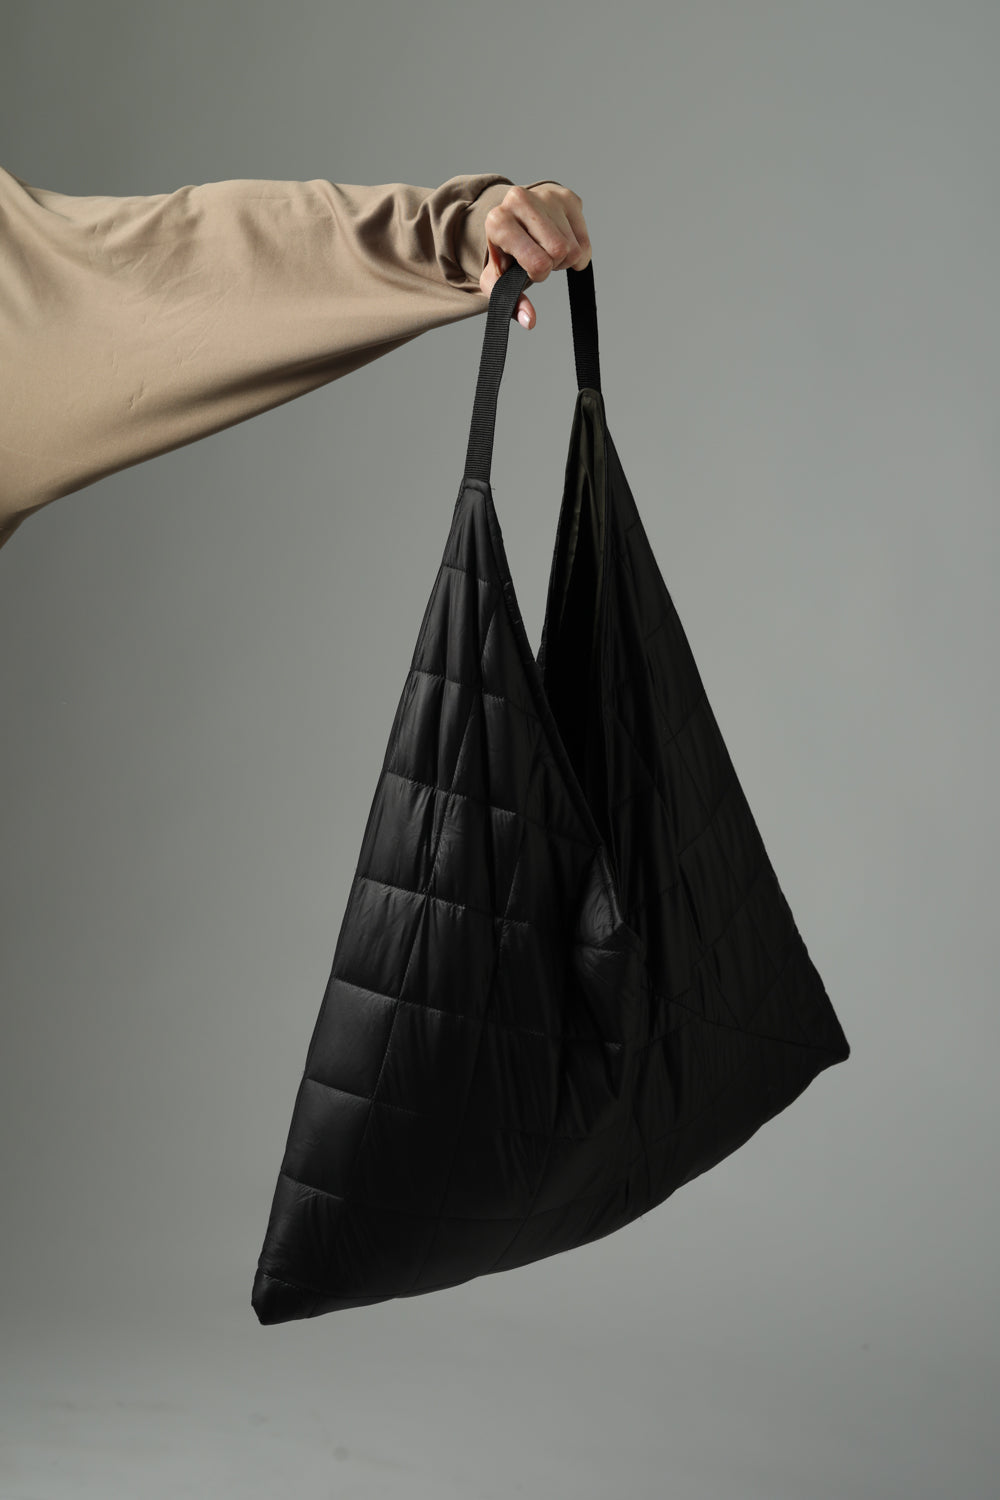  תיק שחור מרופד לנשים דגם Quilted Black Bag 